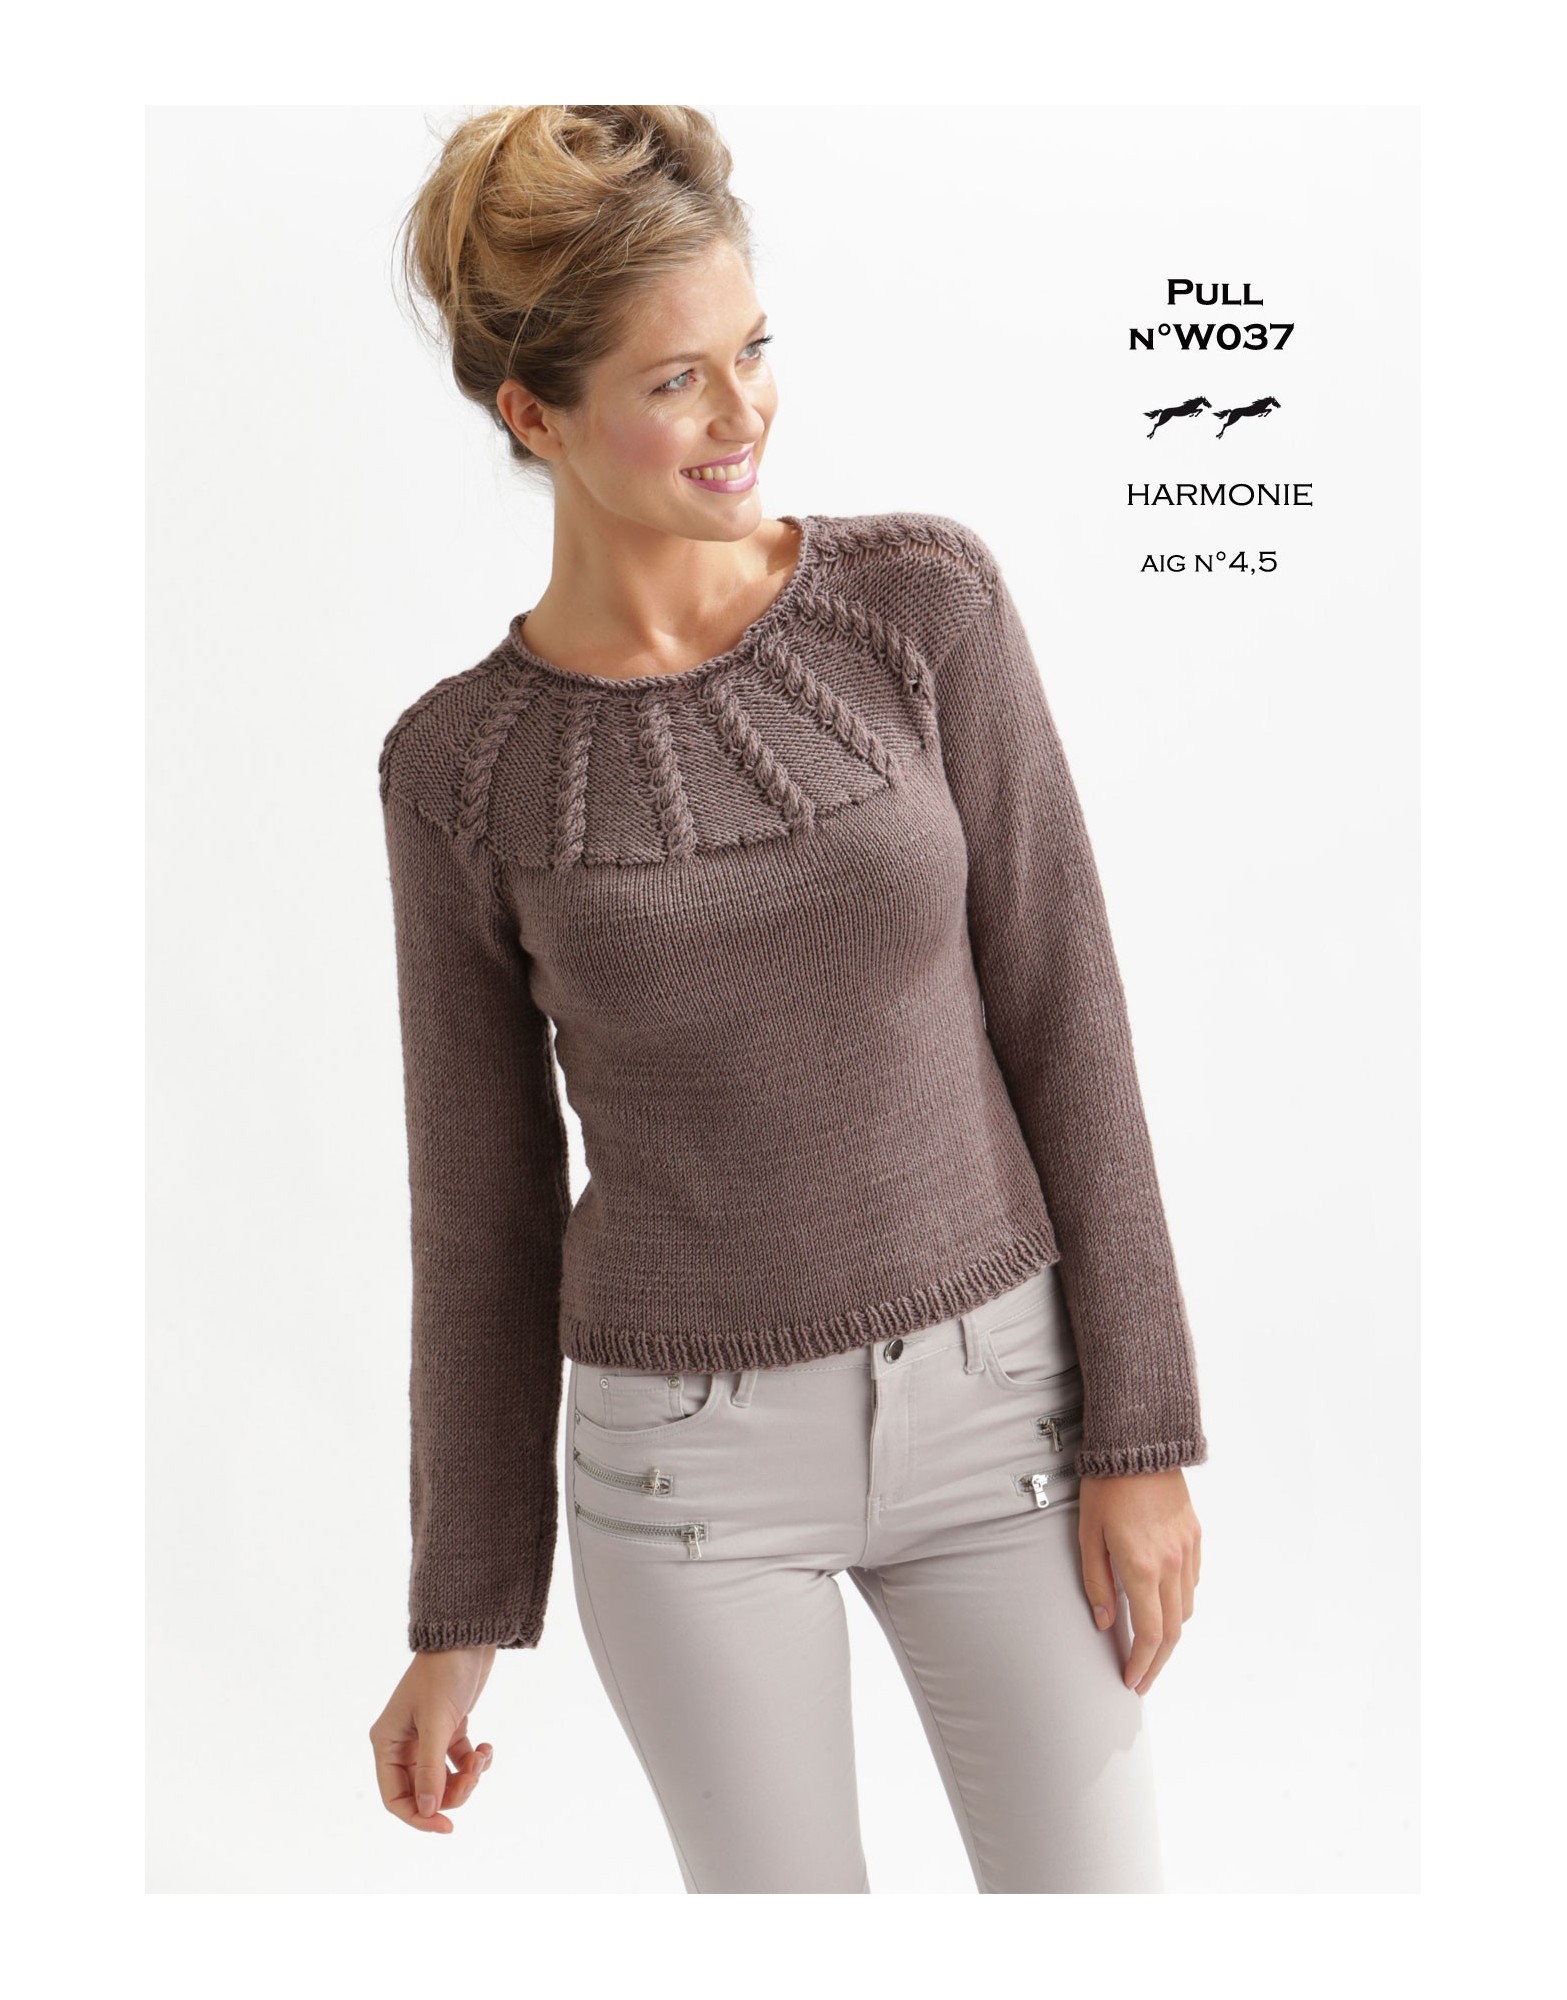 modele pull tunique femme a tricoter gratuit